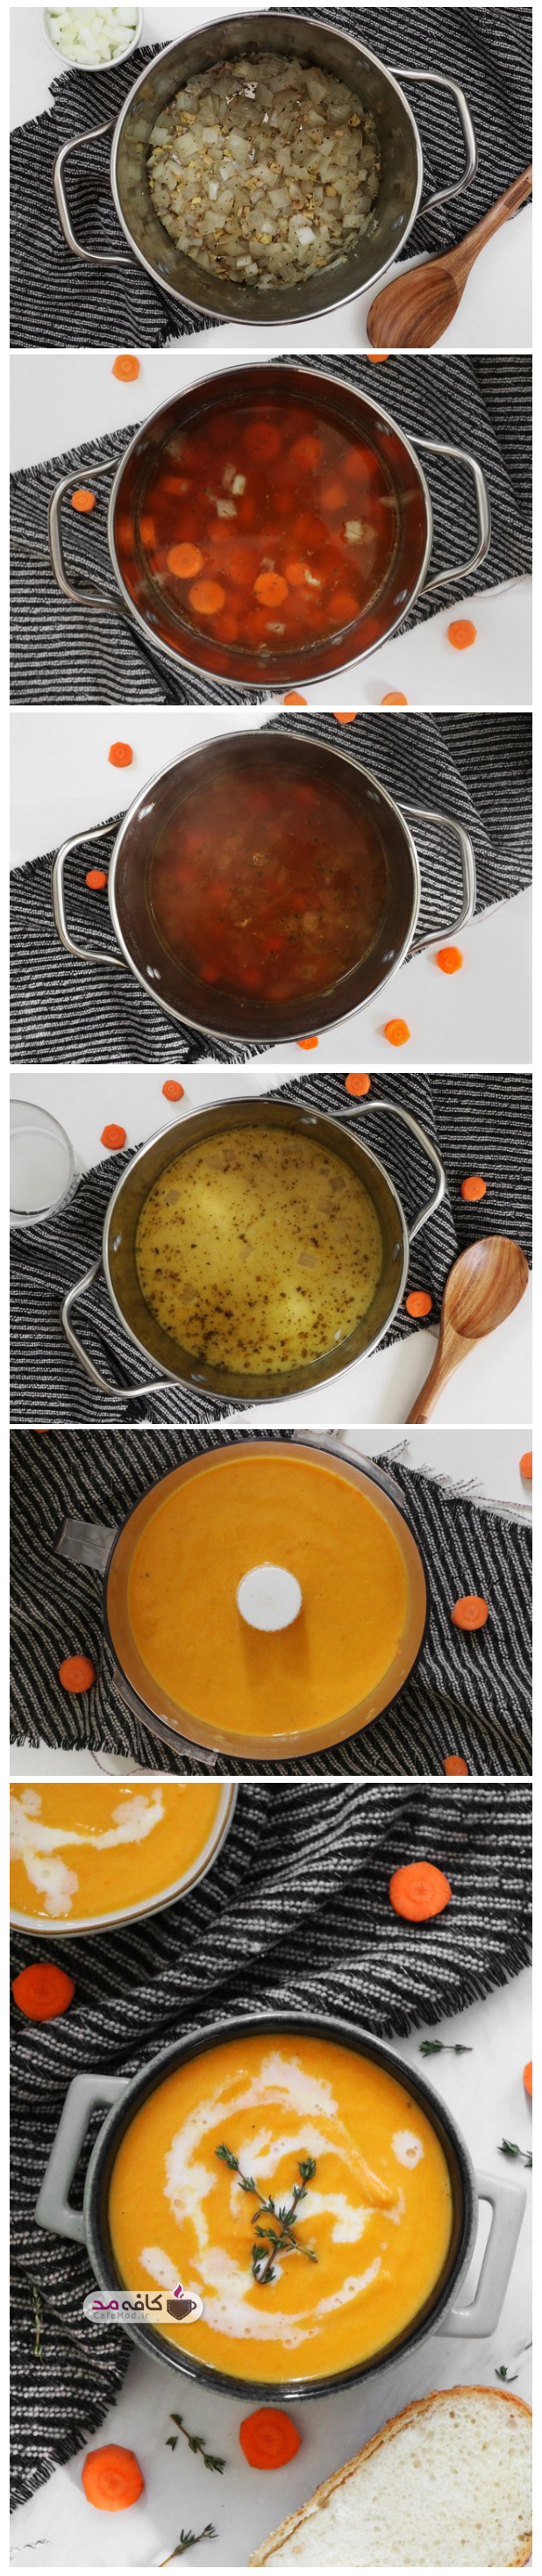 طرز تهیه سوپ پاکسازی کننده هویج و زنجبیل